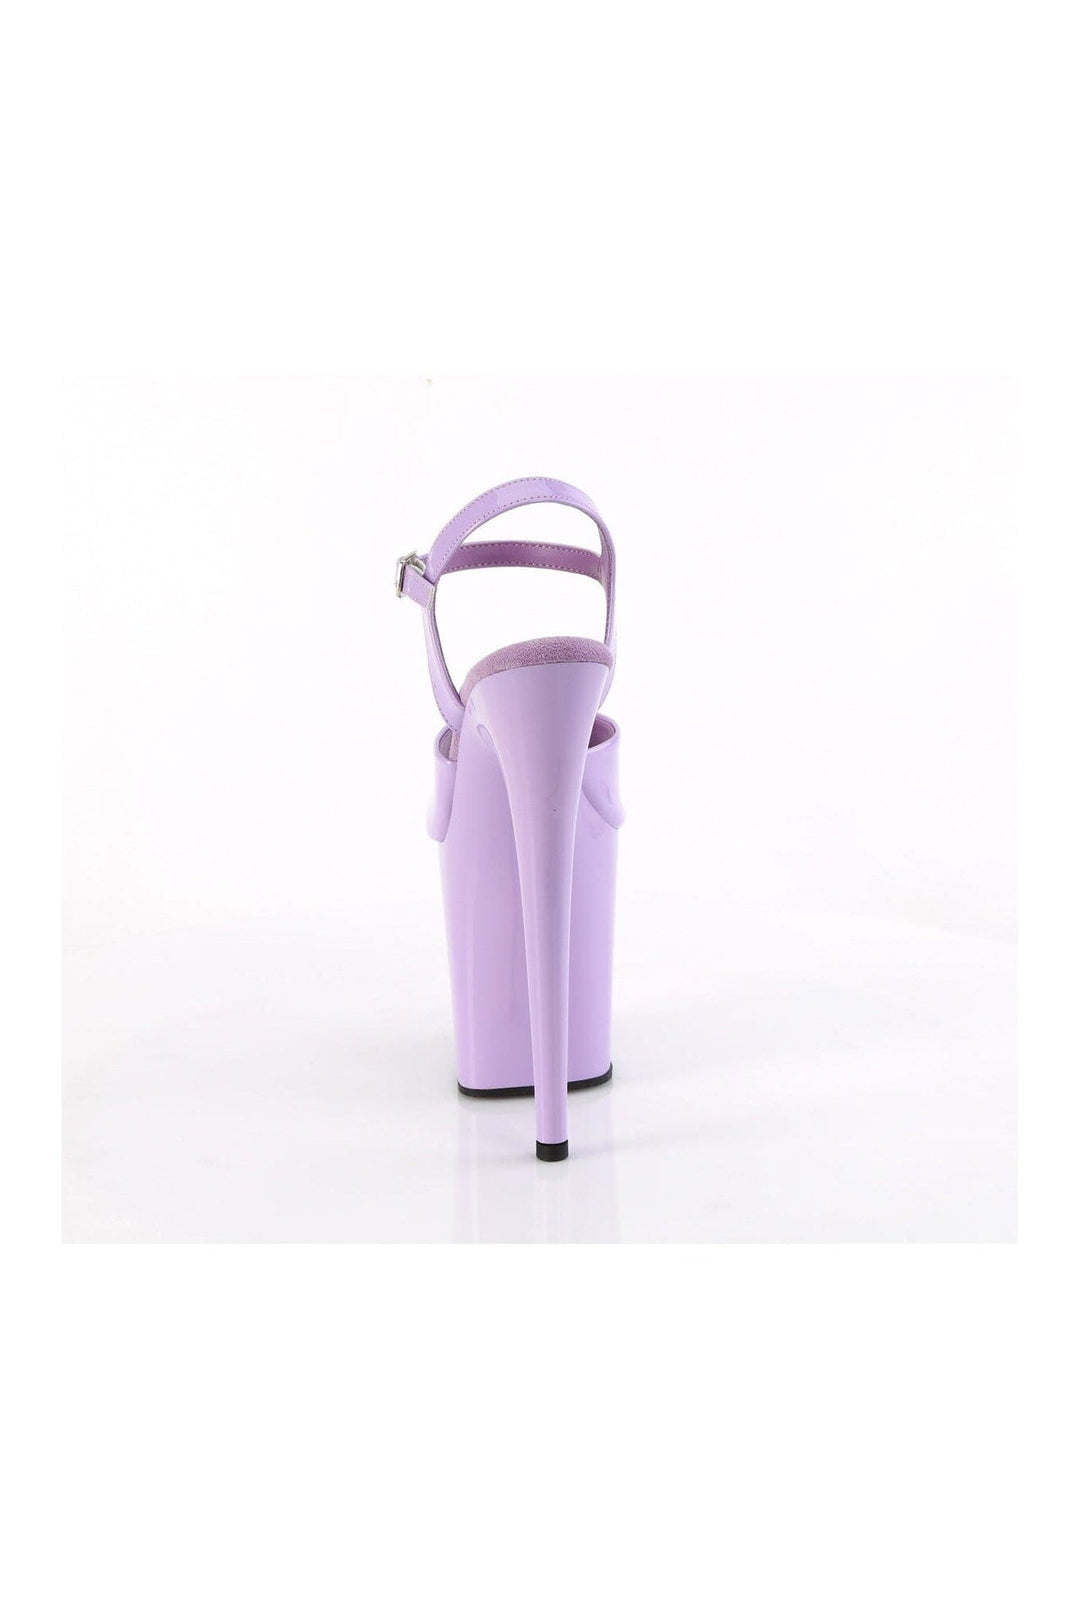 FLAMINGO-809 Purple Patent Sandal-Sandals-Pleaser-SEXYSHOES.COM